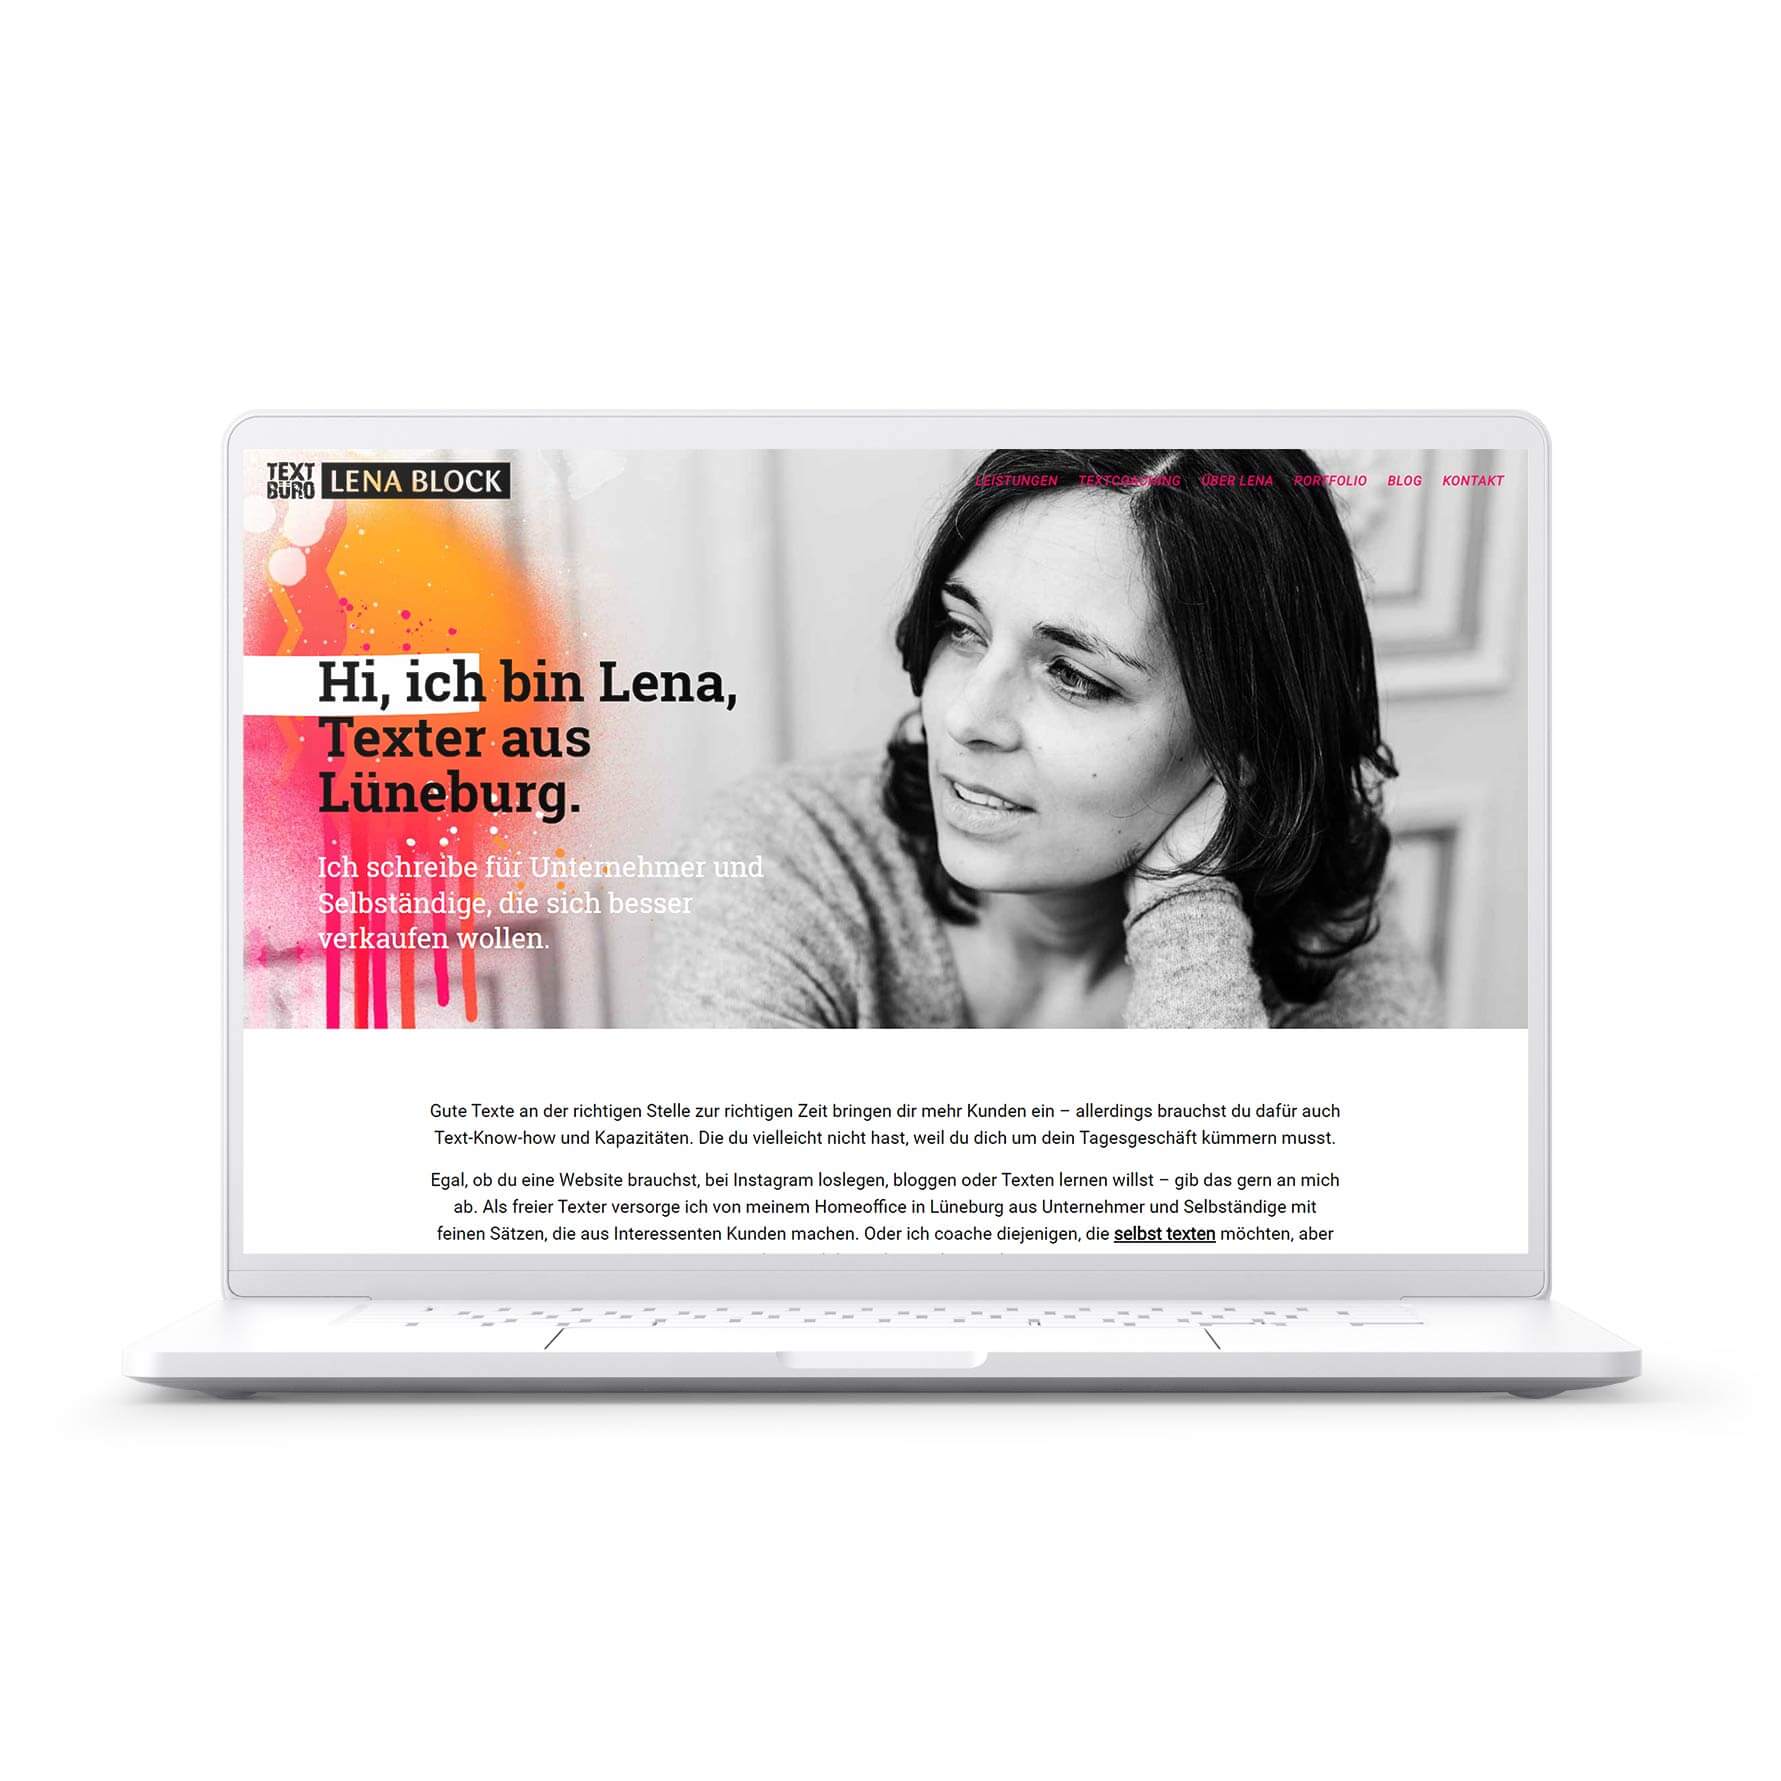 Aufgeklappter Laptop mit dem neuen Webdesign von Texterin Lena Block